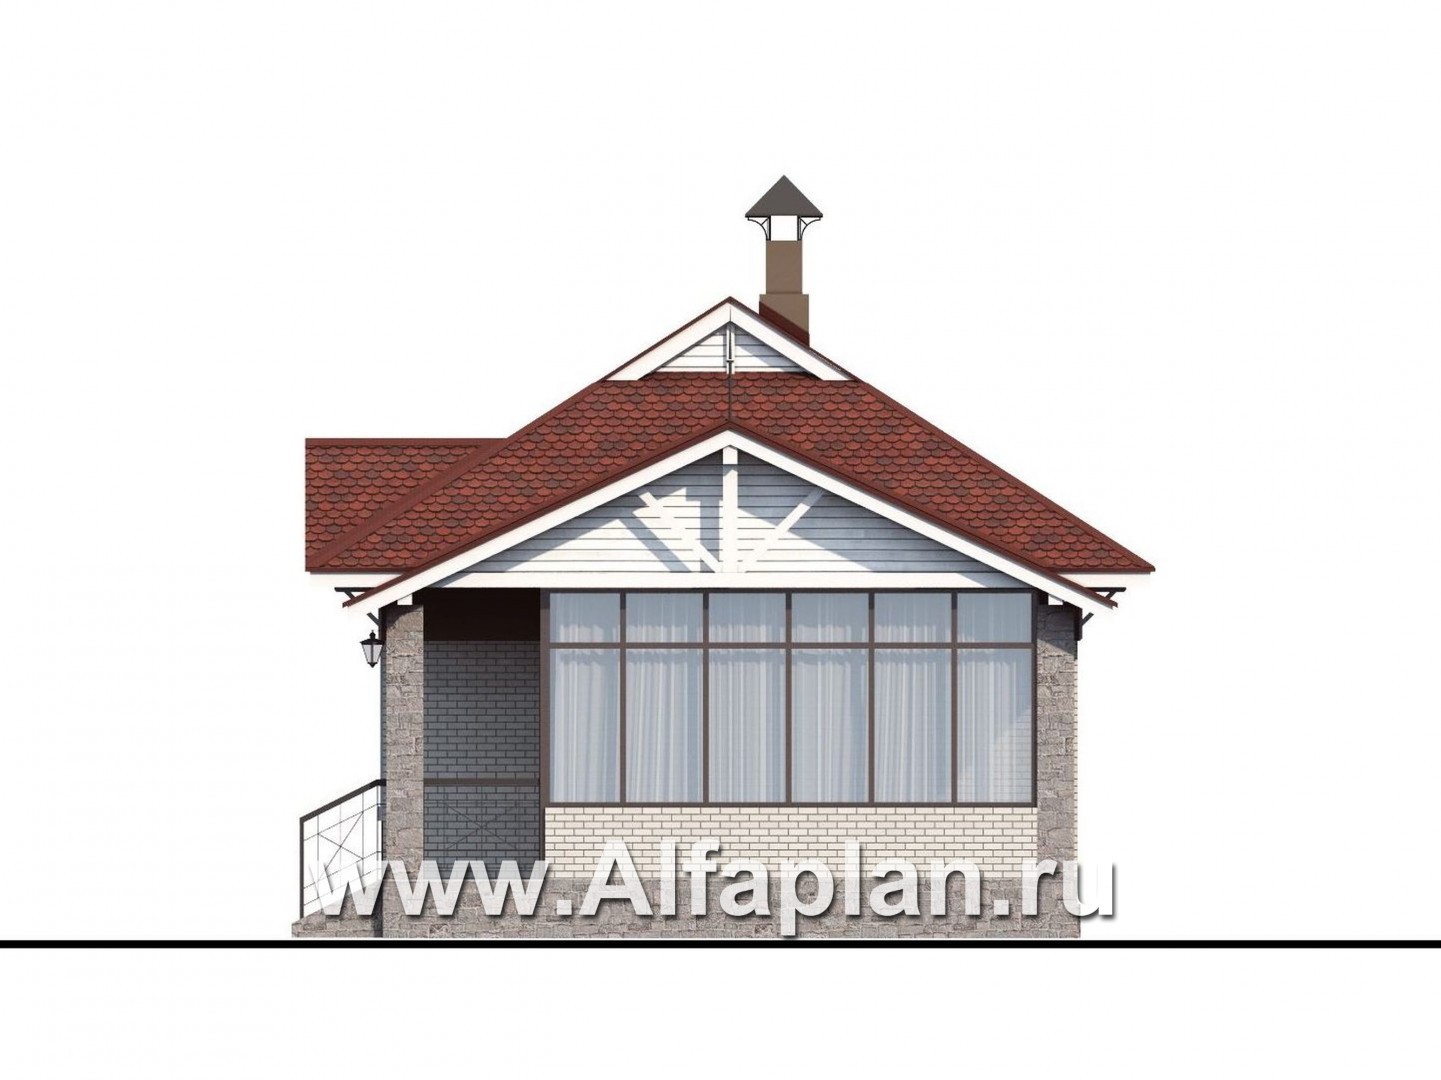 Проект гостевого дома, из кирпича, одна спальня, в русском стиле - фасад дома